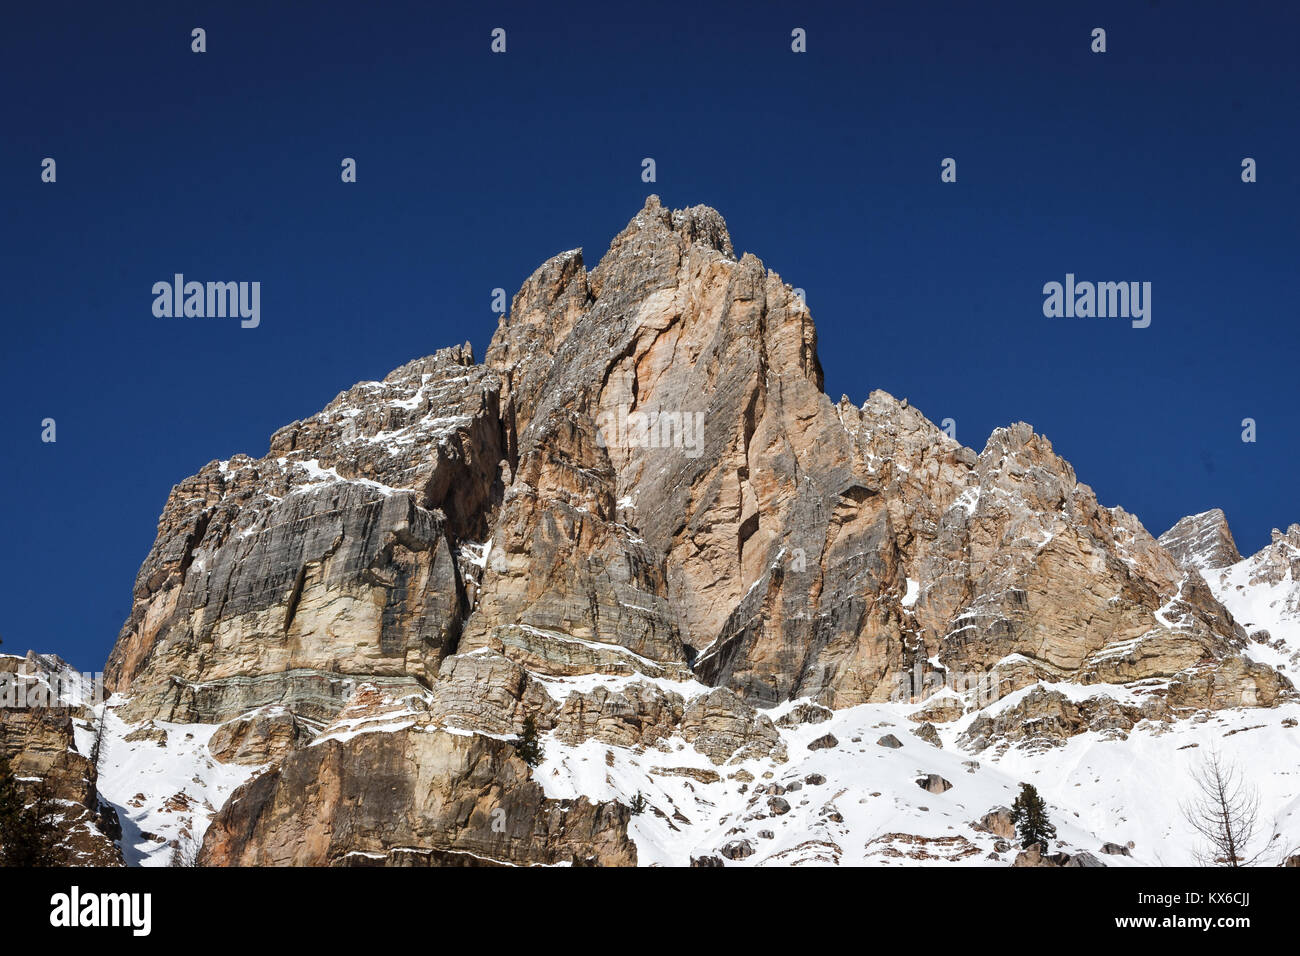 Malerische Bild der Tofana di Rozes über einen blauen Himmel im Winter, Cortina d'Ampezzo, Italien Stockfoto